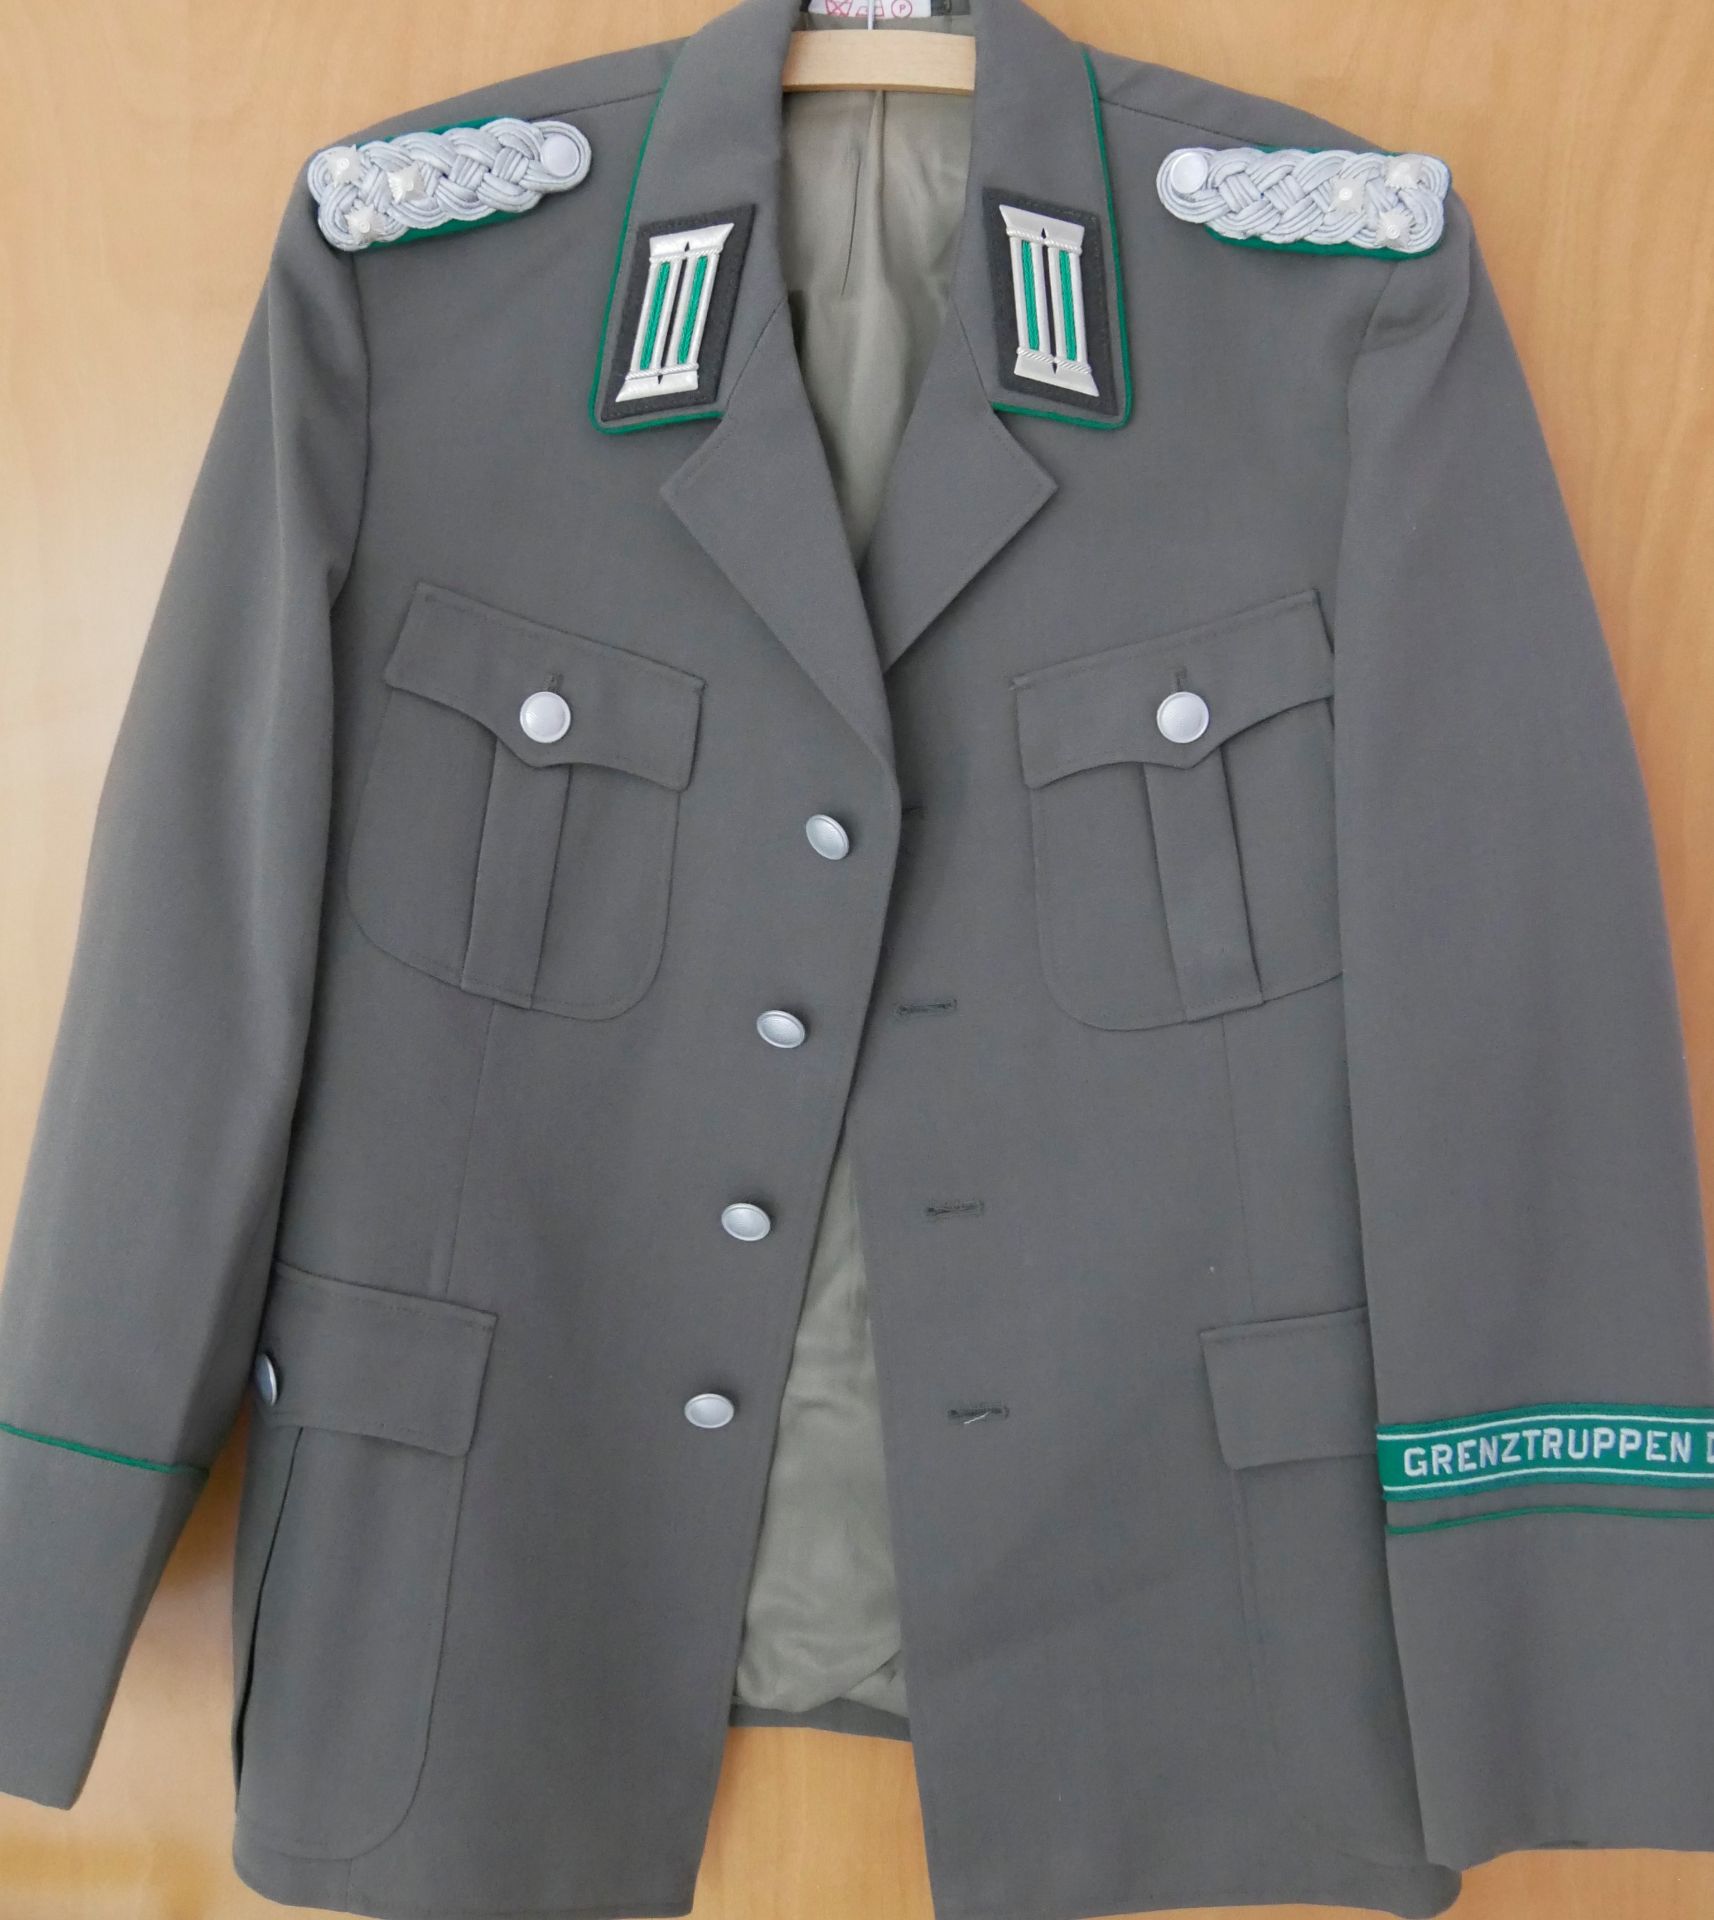 Aus Sammelauflösung! DDR Uniform Jacke mit Effekten "Grenztruppe der DDR" Gr. m 48, guter Zustand.